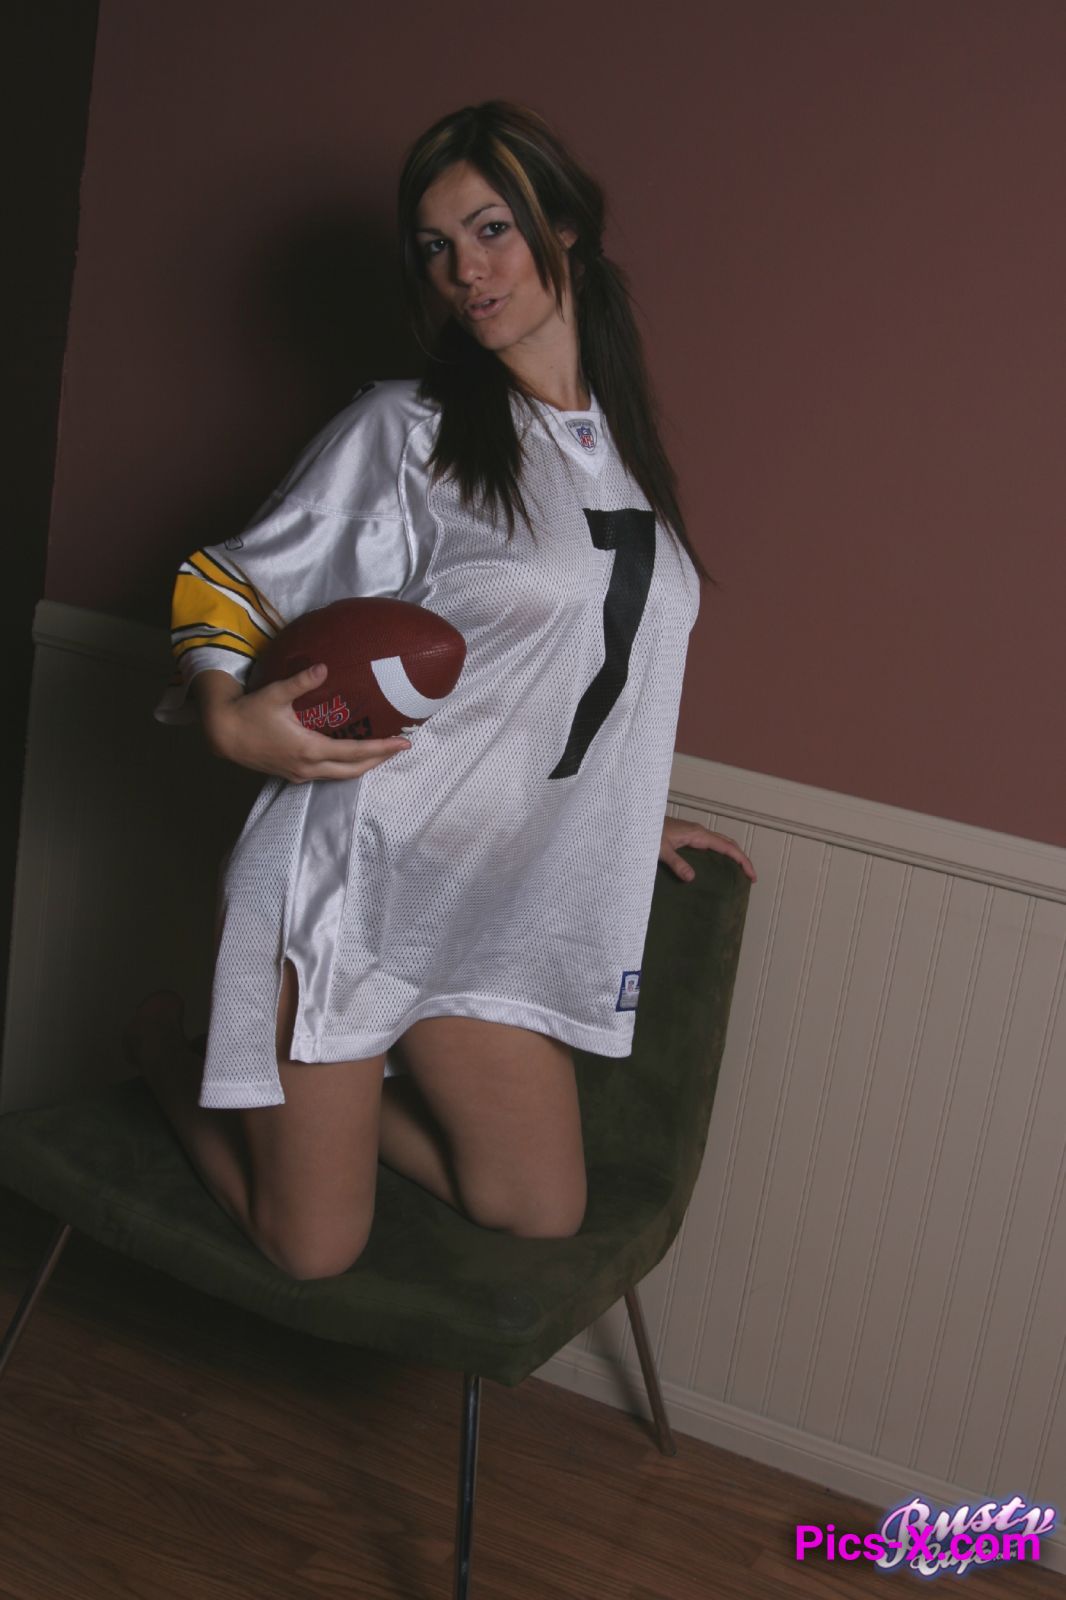 Arika Ready For Football - Image 1